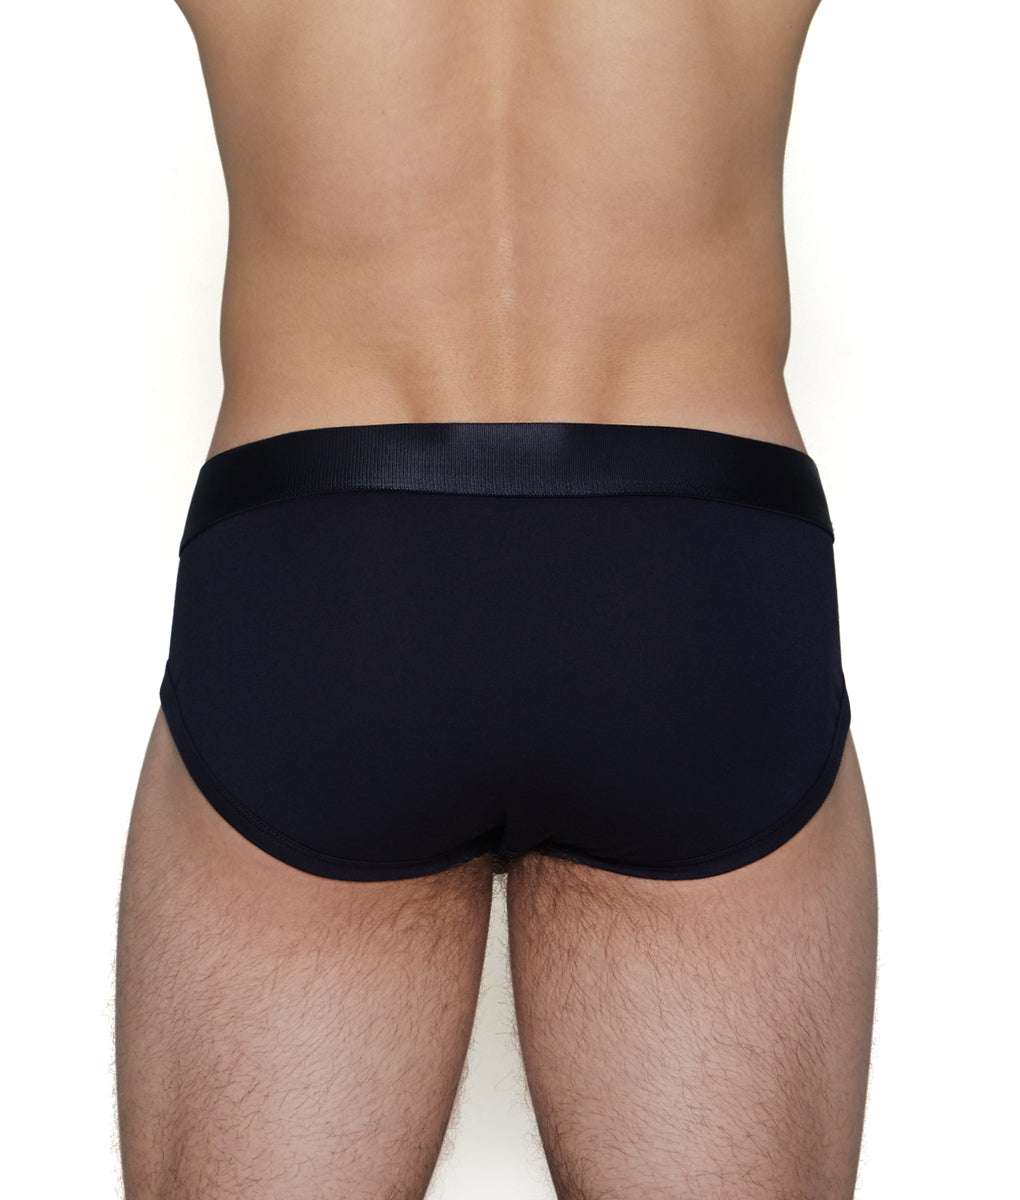 Underwear Expert added a new photo. - Underwear Expert